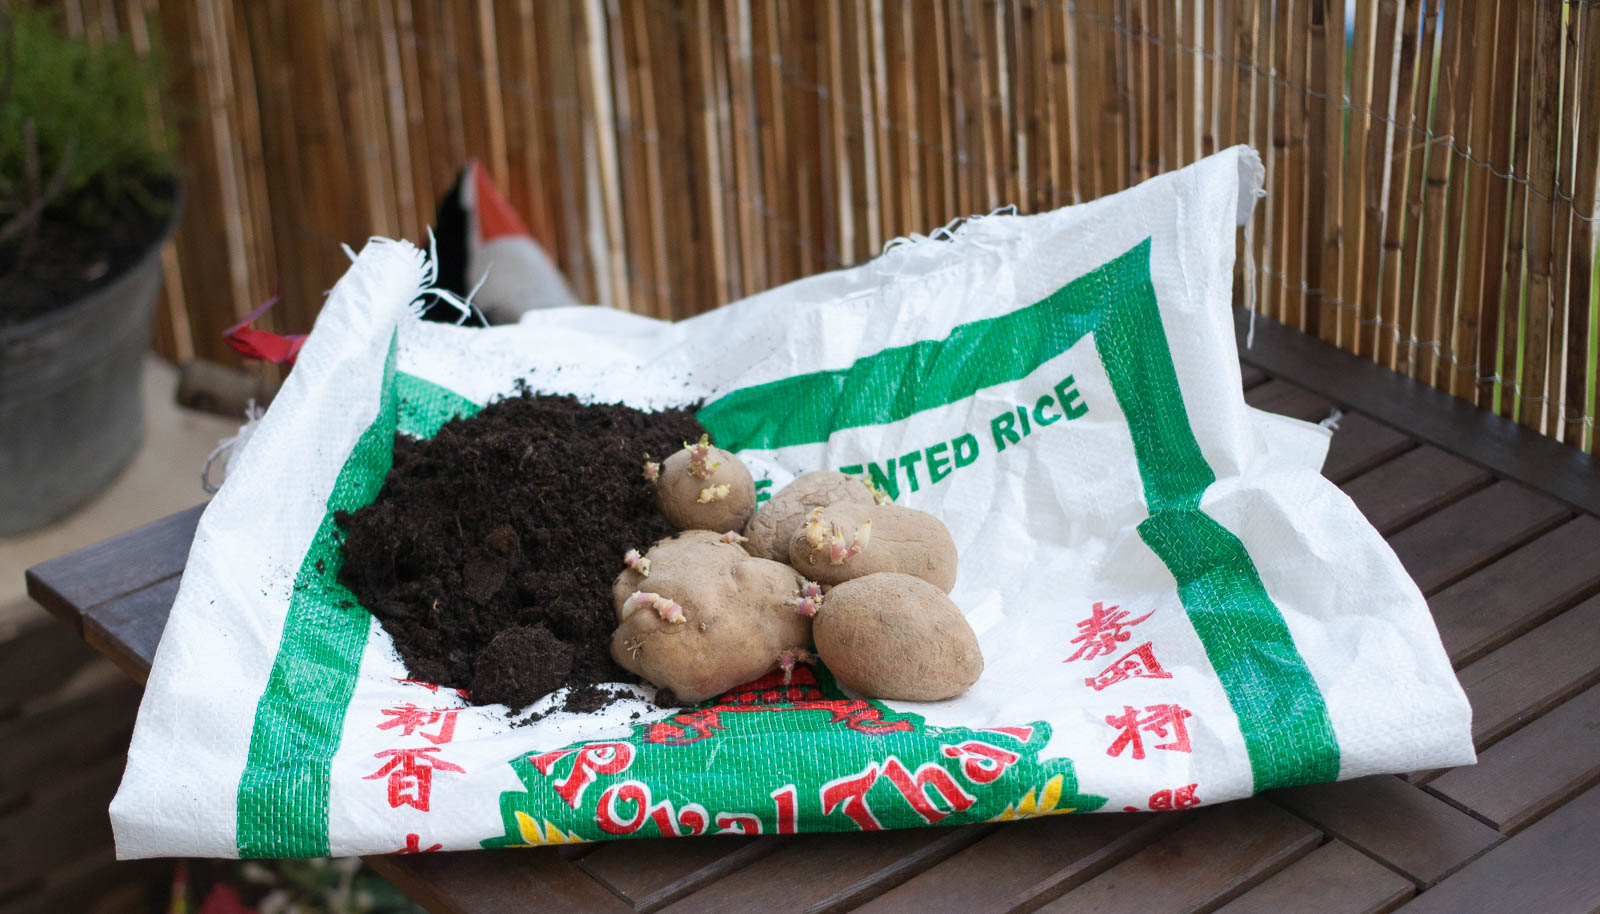 Kartoffeln im Sack anbauen